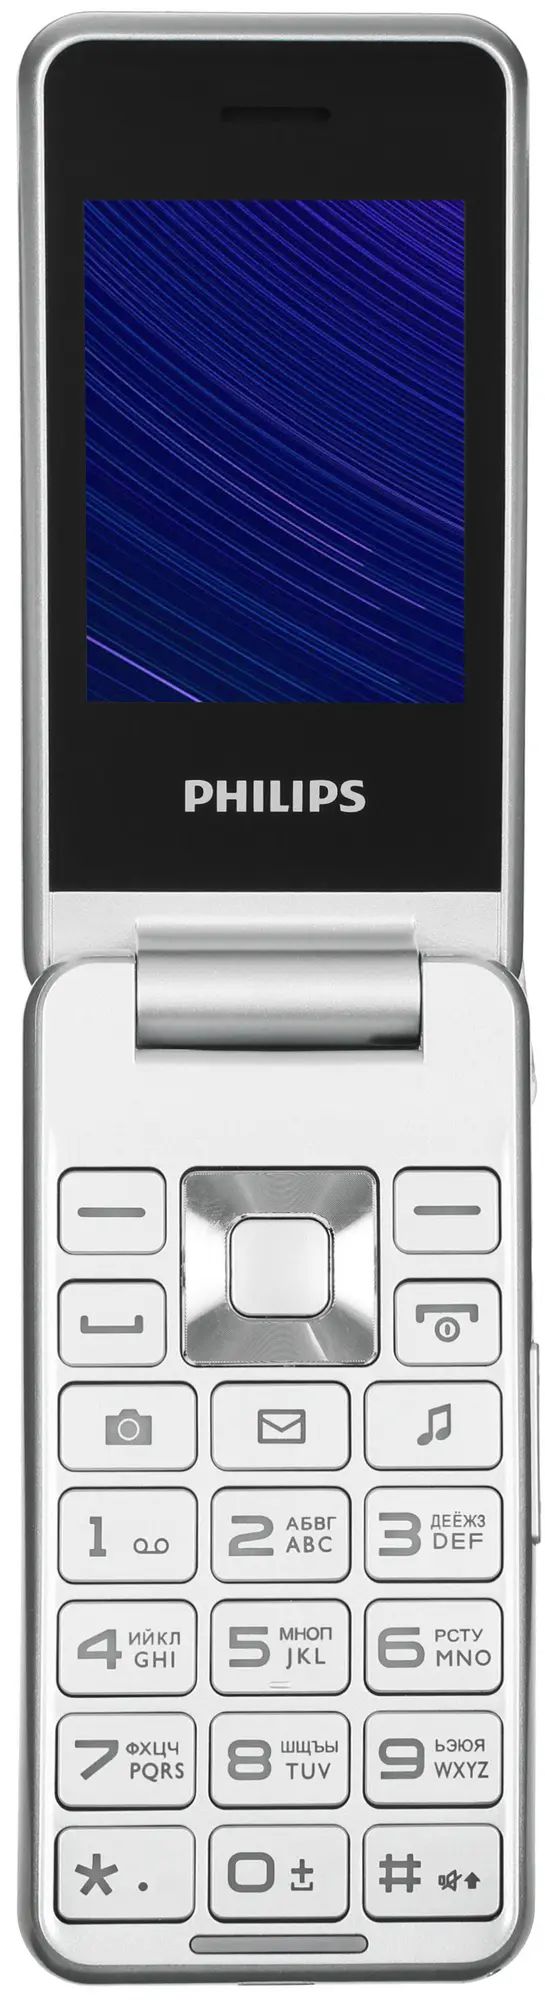 Телефон xenium e2601. Philips Xenium e2601. Philips Xenium e2601 серебристый. Сотовый телефон Philips Xenium e2601 белый. Сотовый телефон Philips Xenium e2601, серебристый.